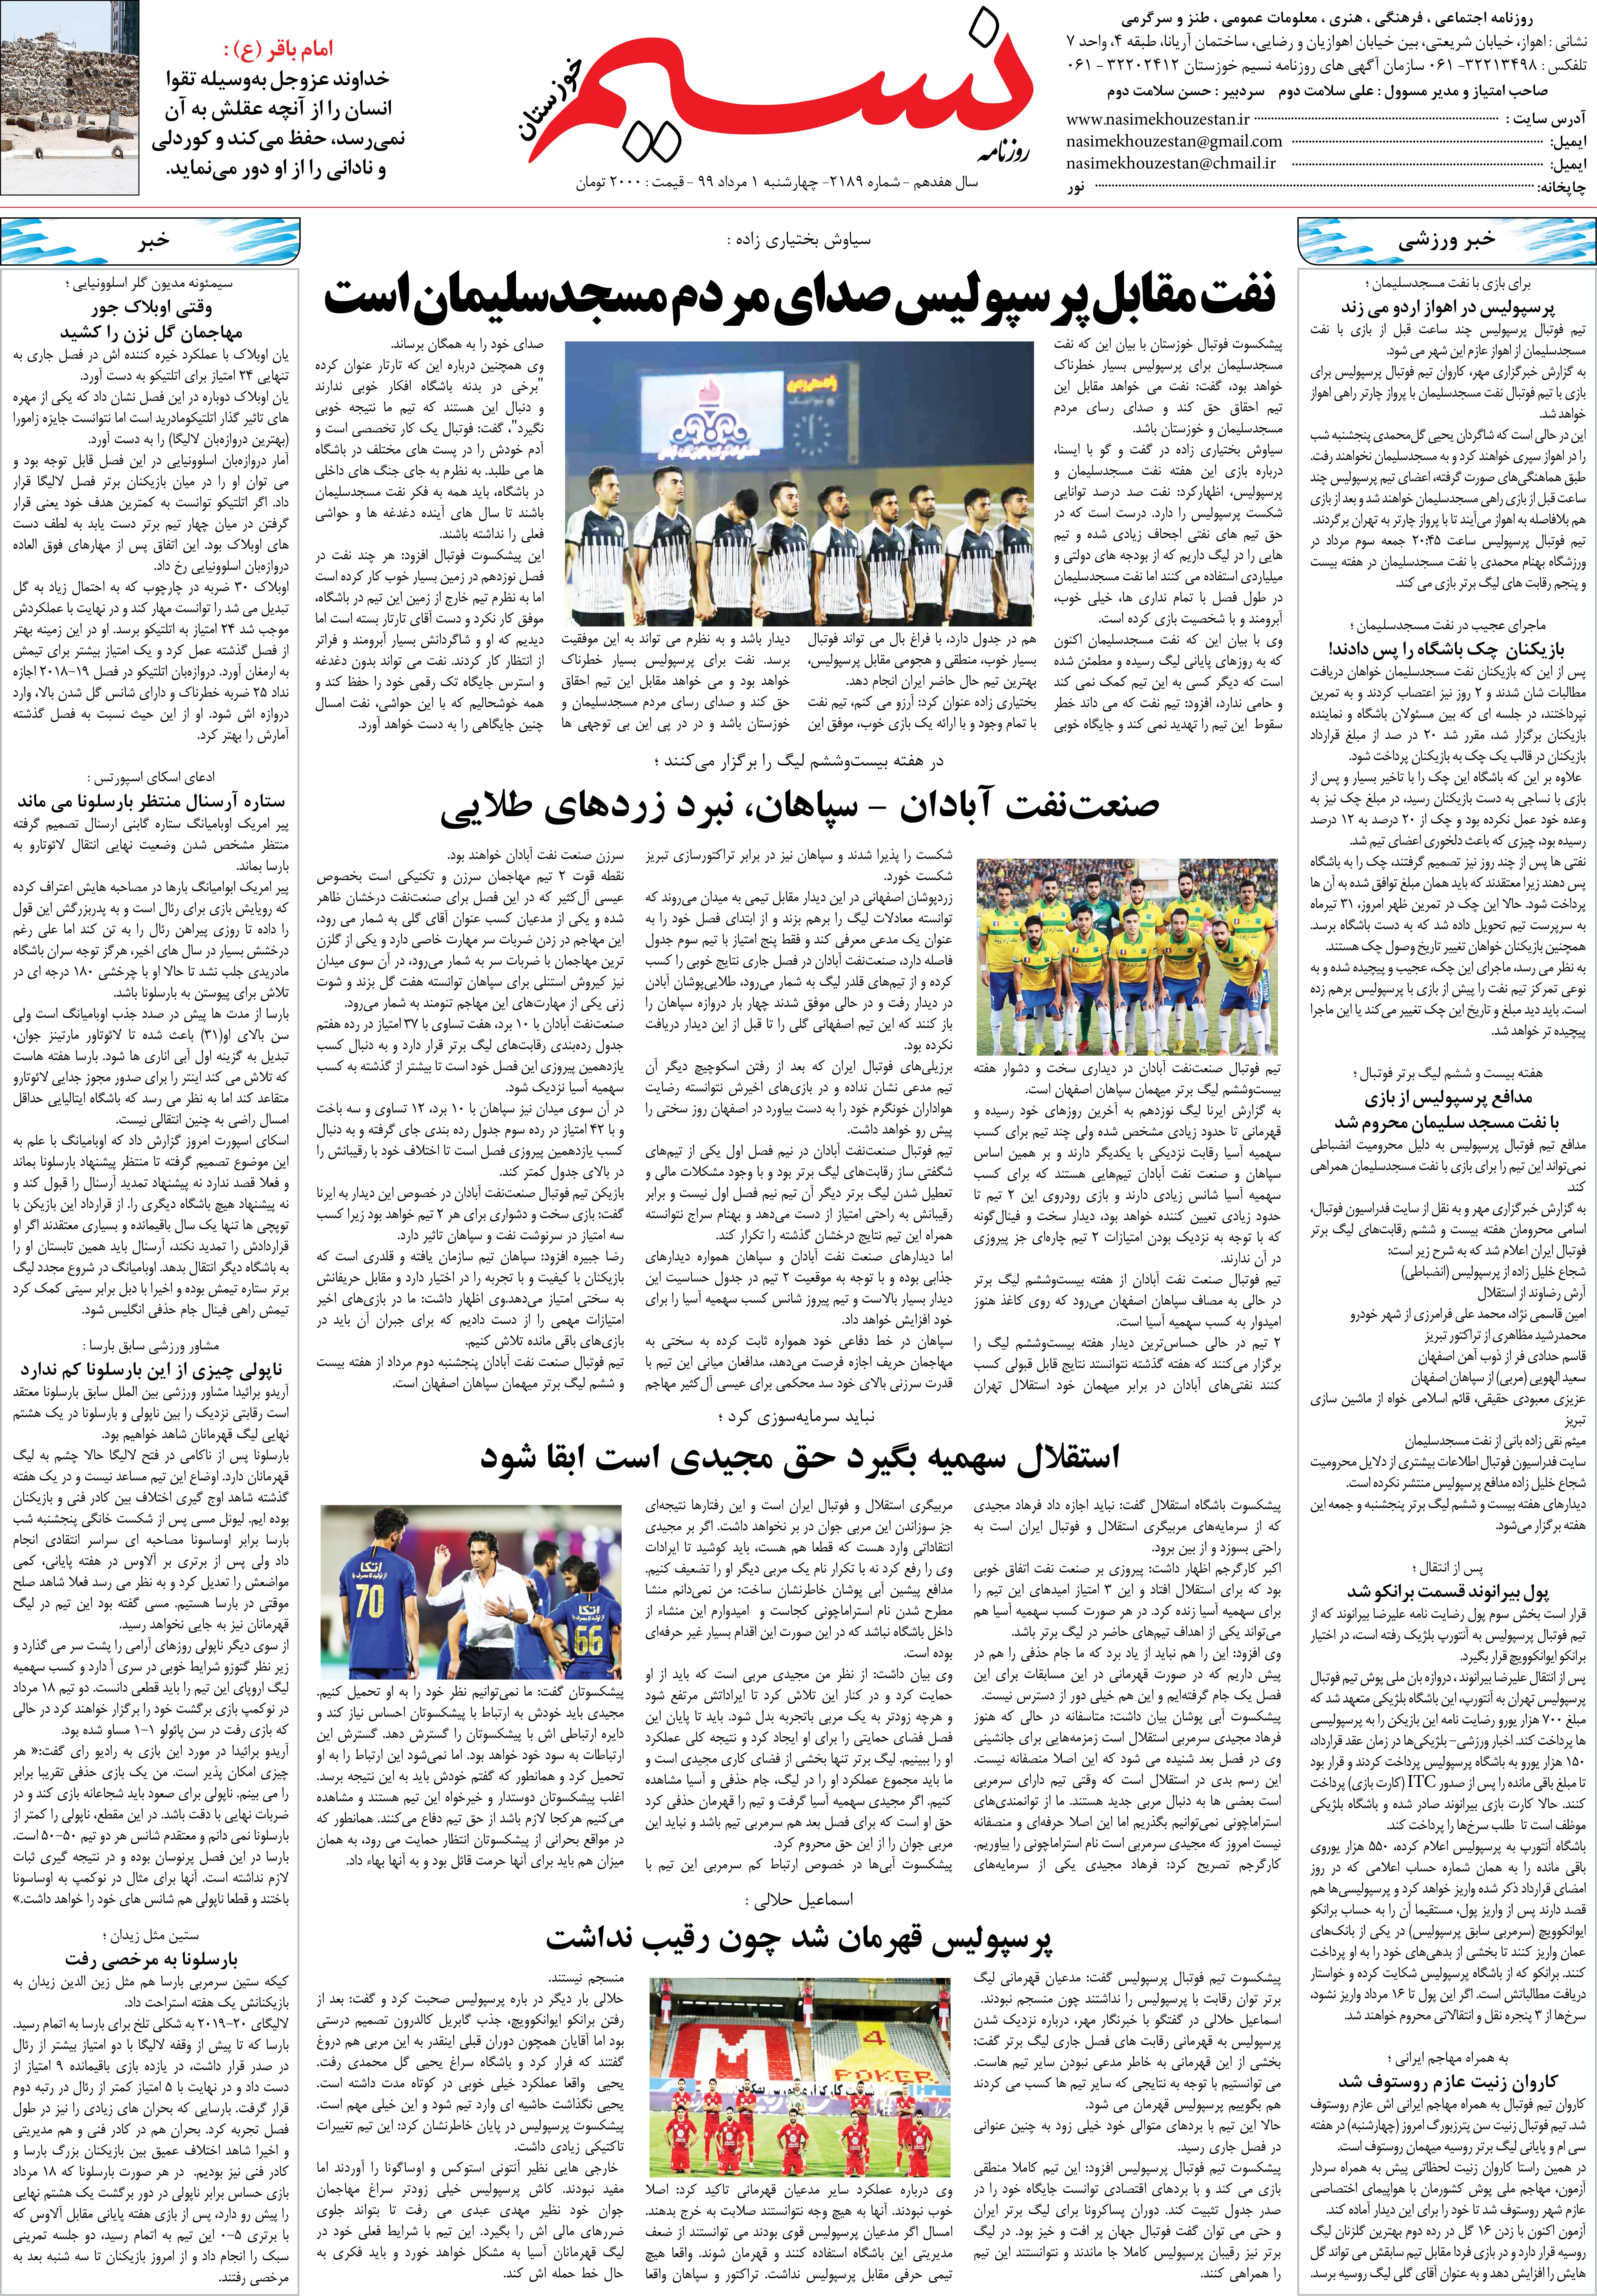 صفحه آخر روزنامه نسیم شماره 2189